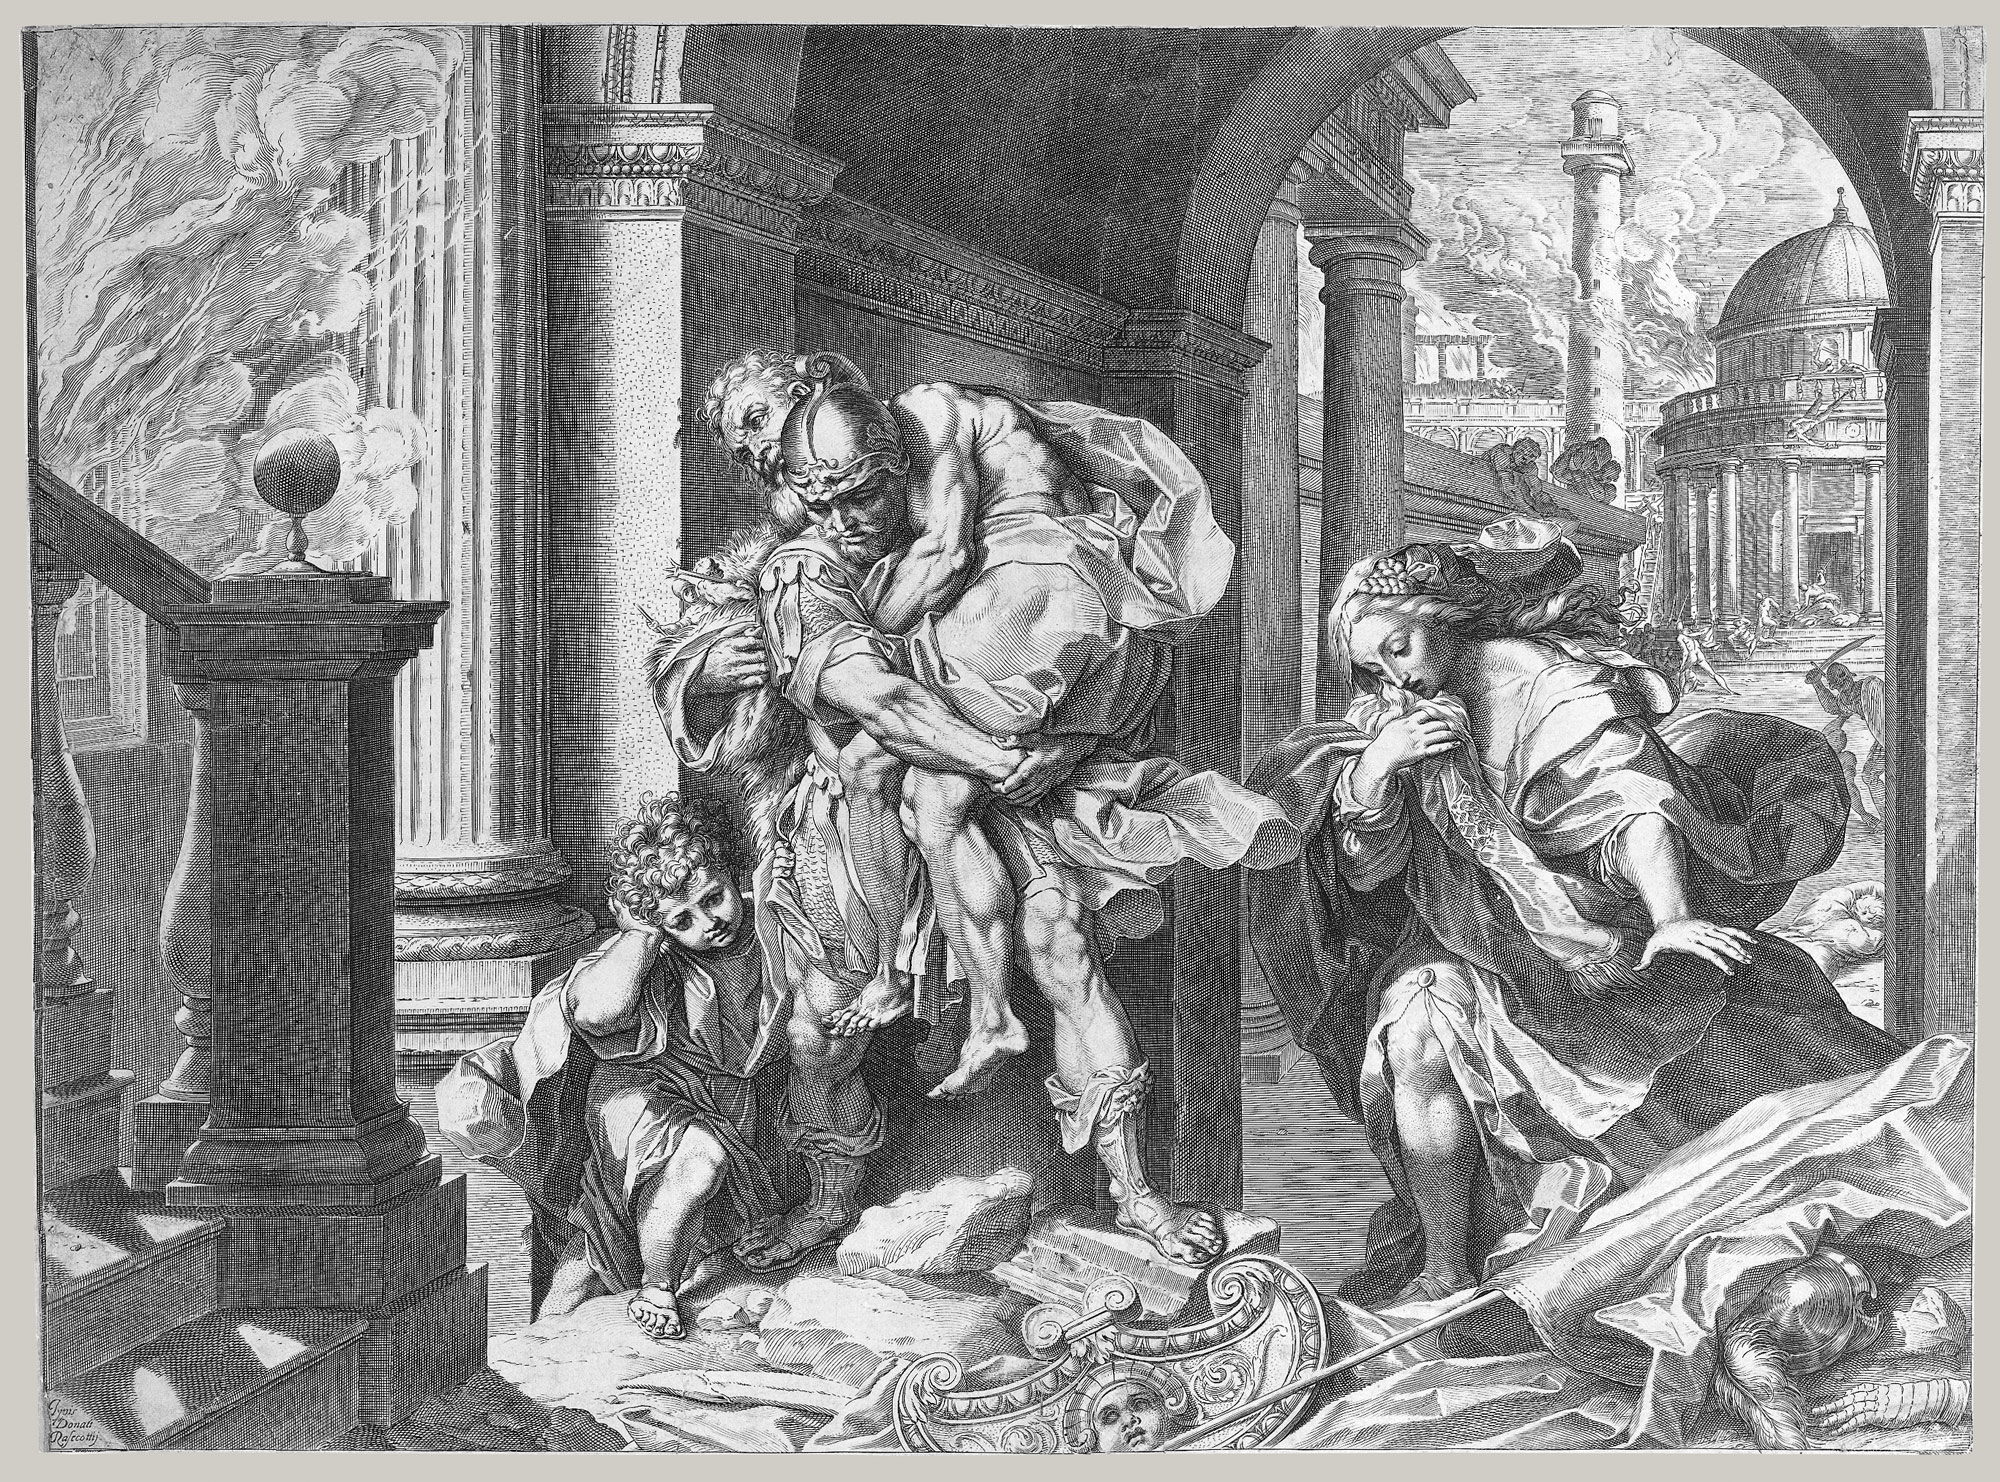 Αγκοστίνο Καρράτσι - 16 Αυγούστου 1557 - 22 Μαρτίου 1602